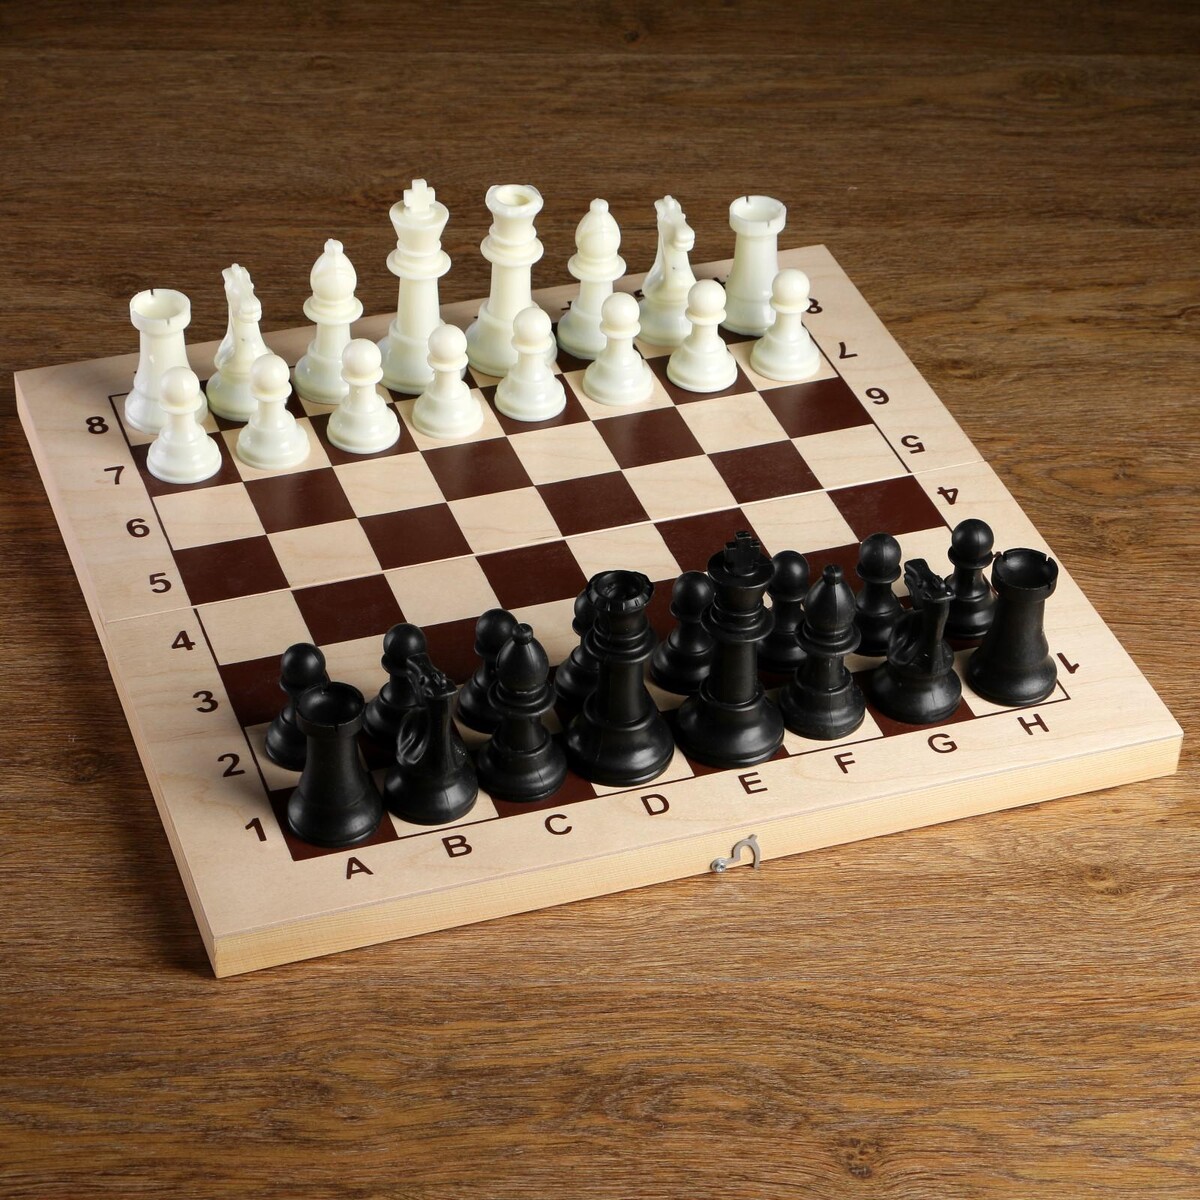 Шахматные фигуры, пластик, король h-10.5 см, пешка h-5 см письма скорпиона проходная пешка